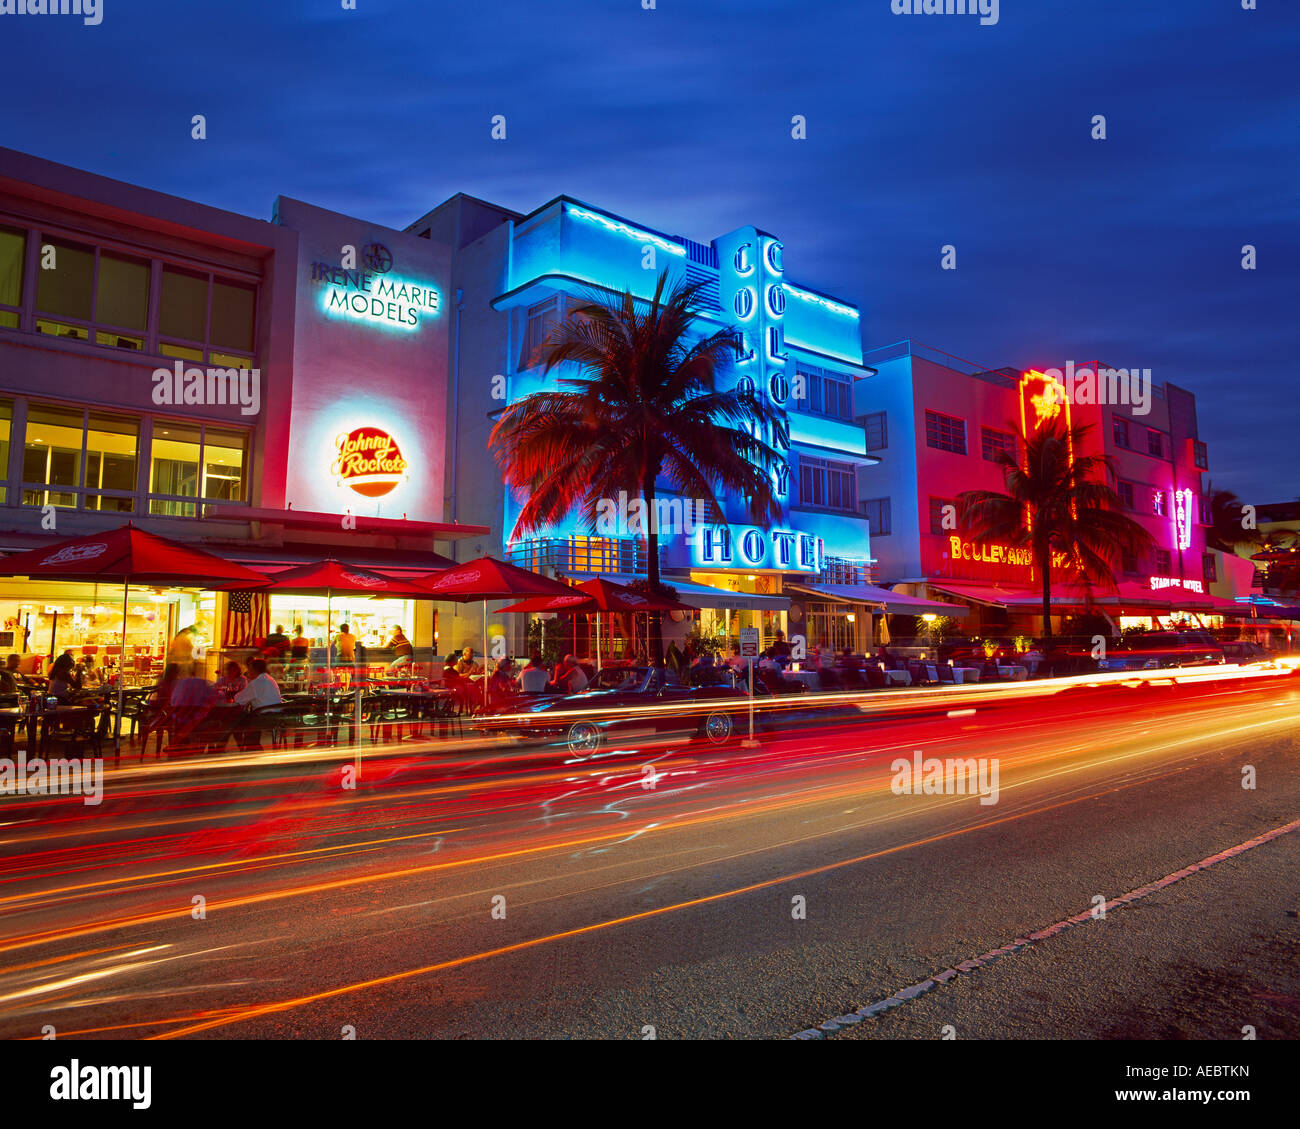 Au crépuscule du quartier Art déco de Miami Beach Ocean Drive Miami Floride États-Unis d'Amérique Amérique du Nord Banque D'Images